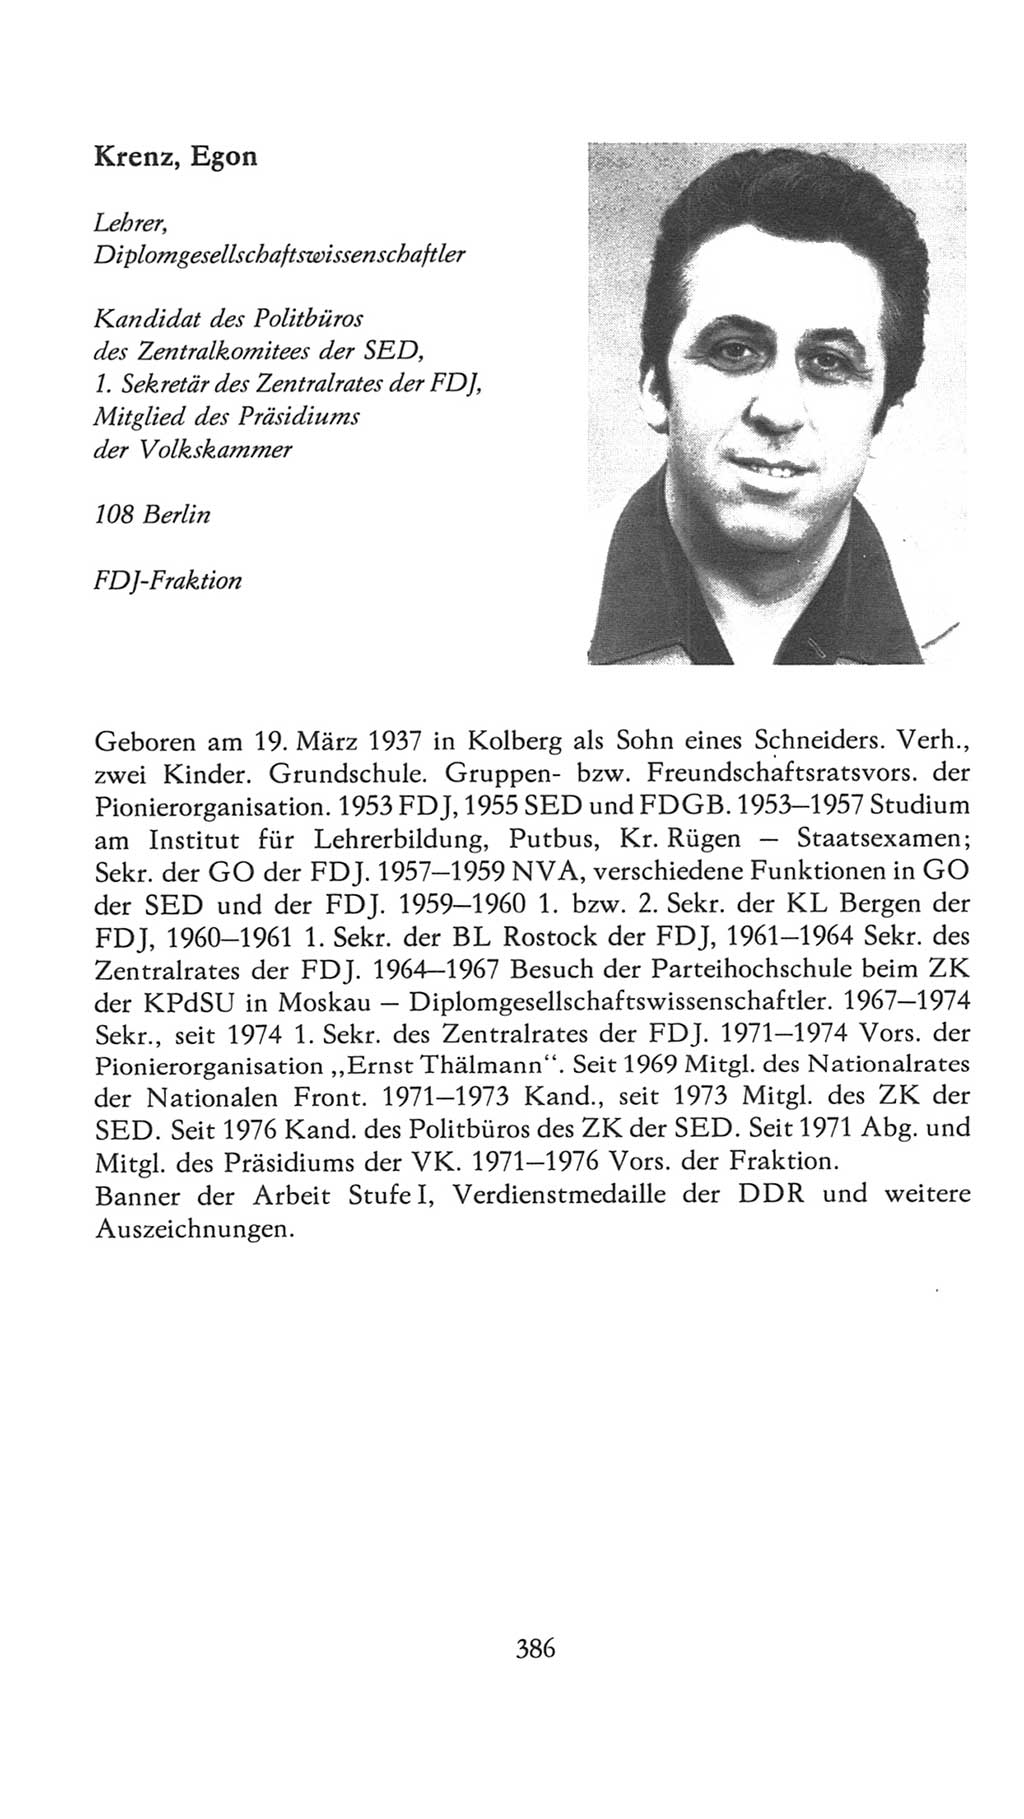 Volkskammer (VK) der Deutschen Demokratischen Republik (DDR), 7. Wahlperiode 1976-1981, Seite 386 (VK. DDR 7. WP. 1976-1981, S. 386)